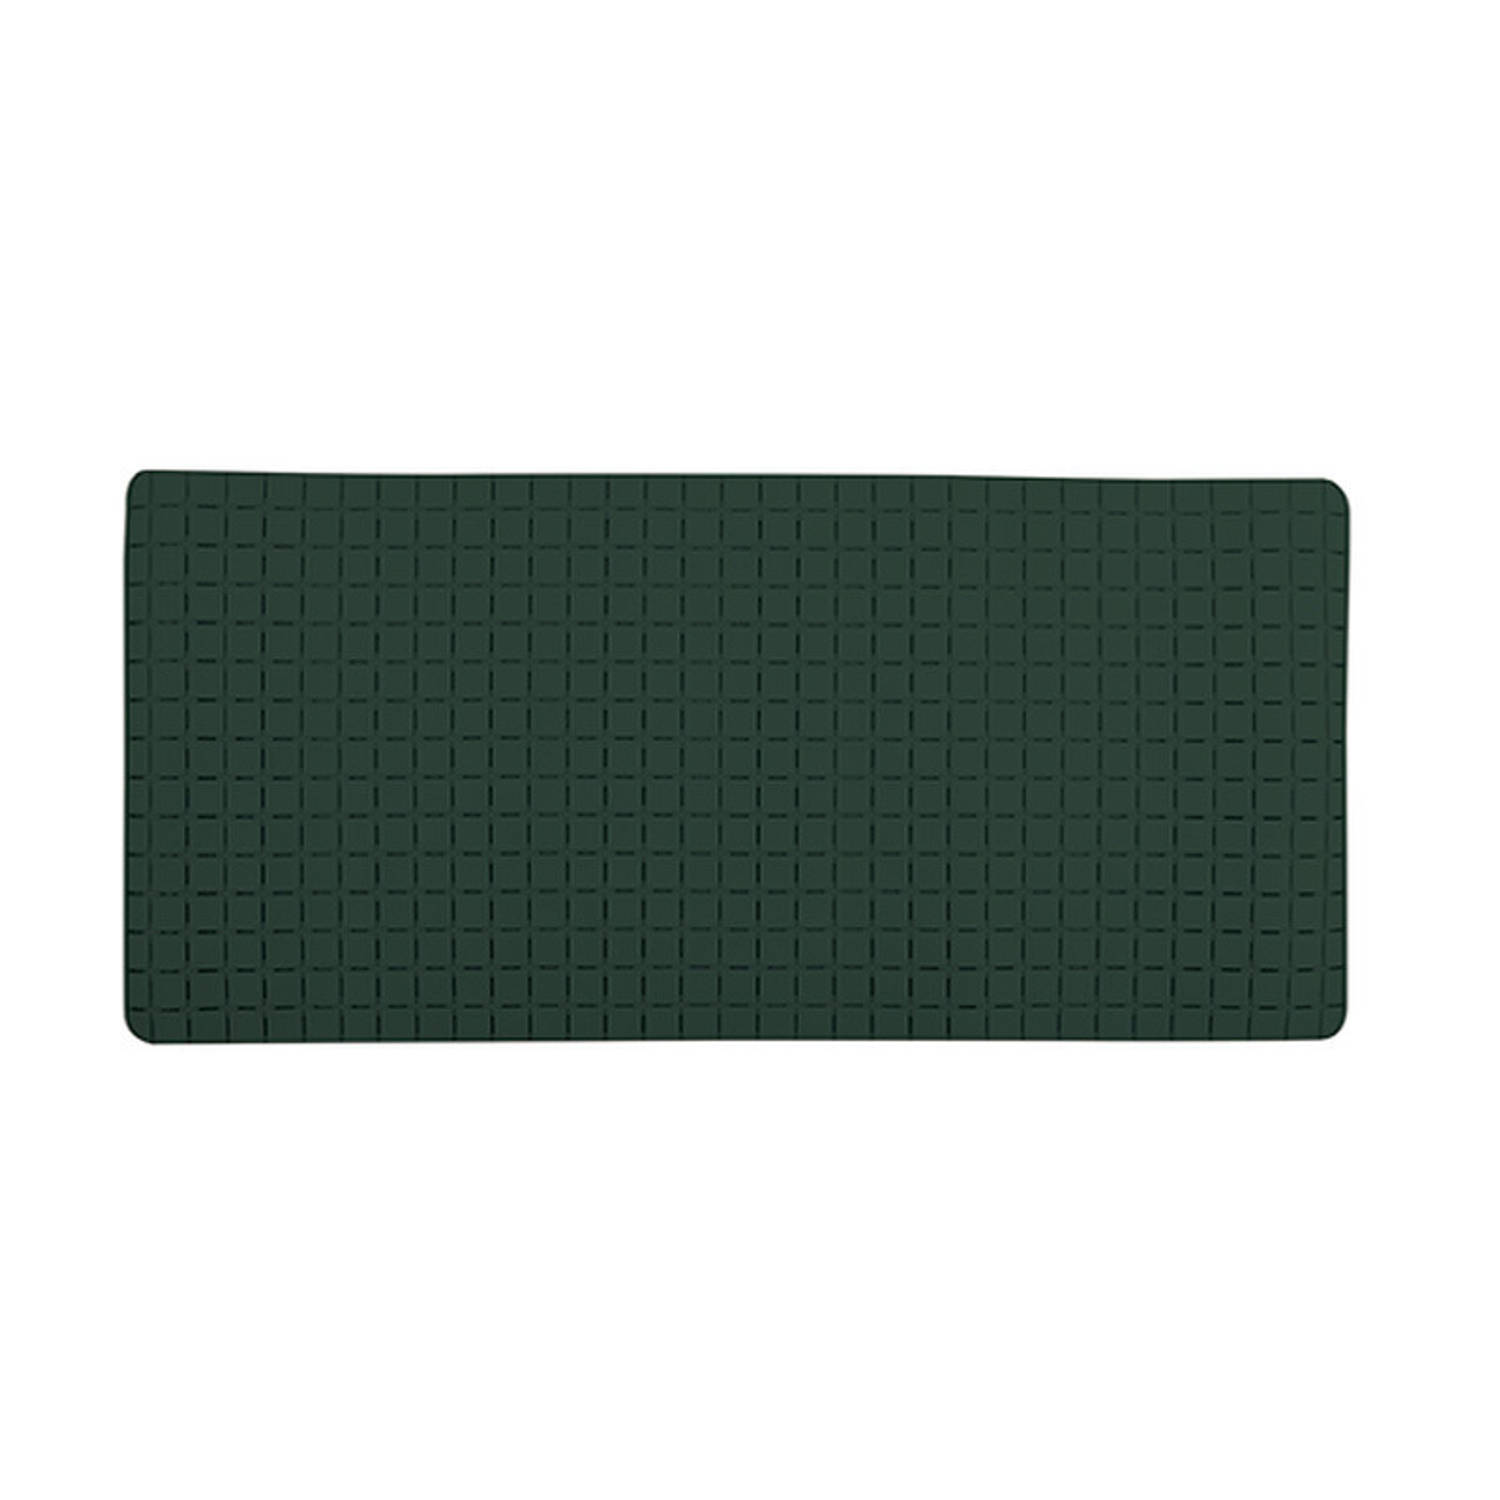 MSV Douche-bad anti-slip mat badkamer rubber groen -A 76 x 36 cm Badmatjes